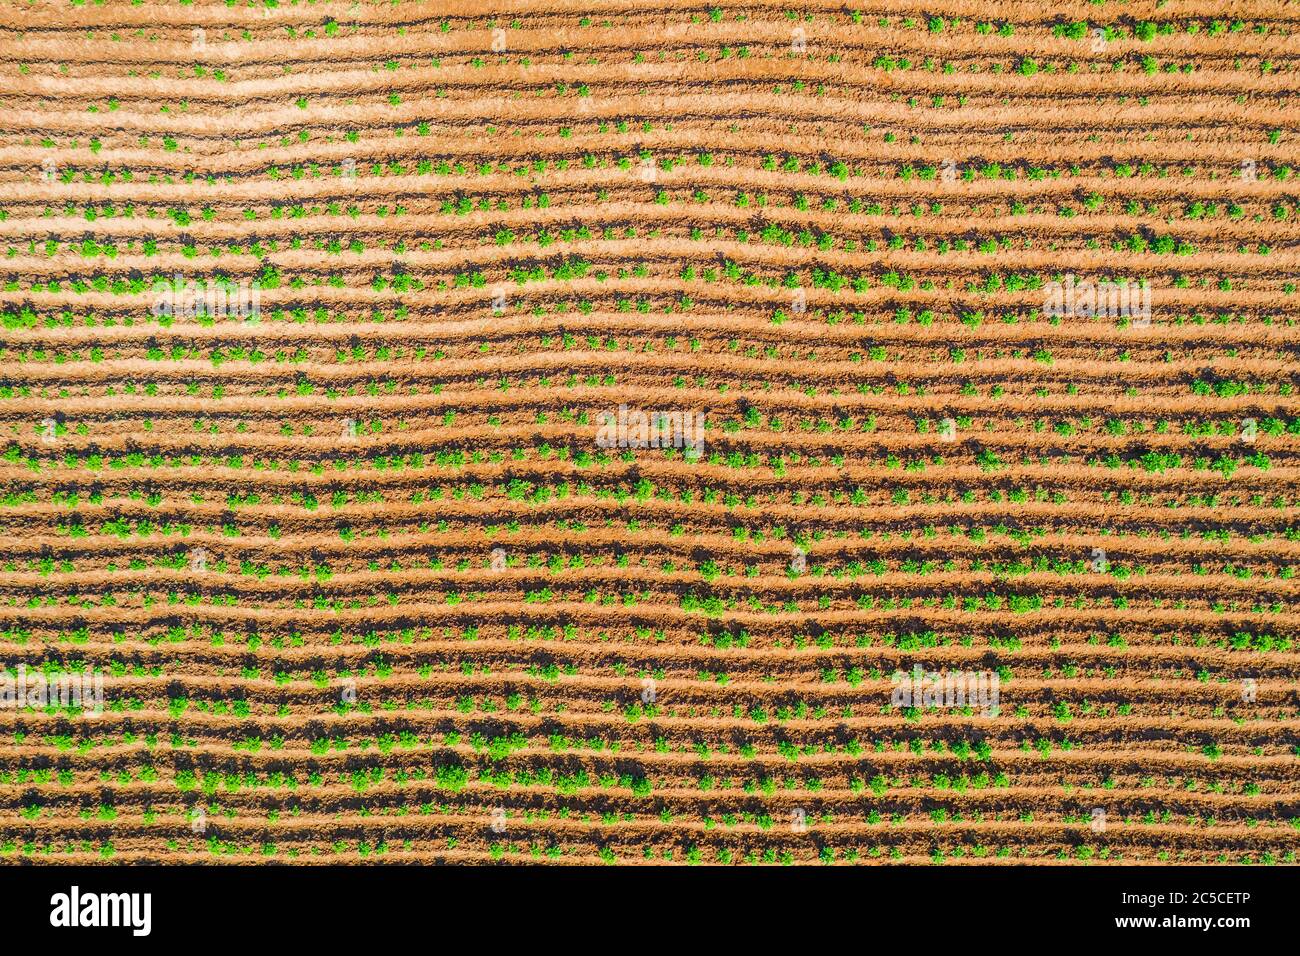 La struttura delle file di piantare piante agricole vista dall'alto Foto Stock